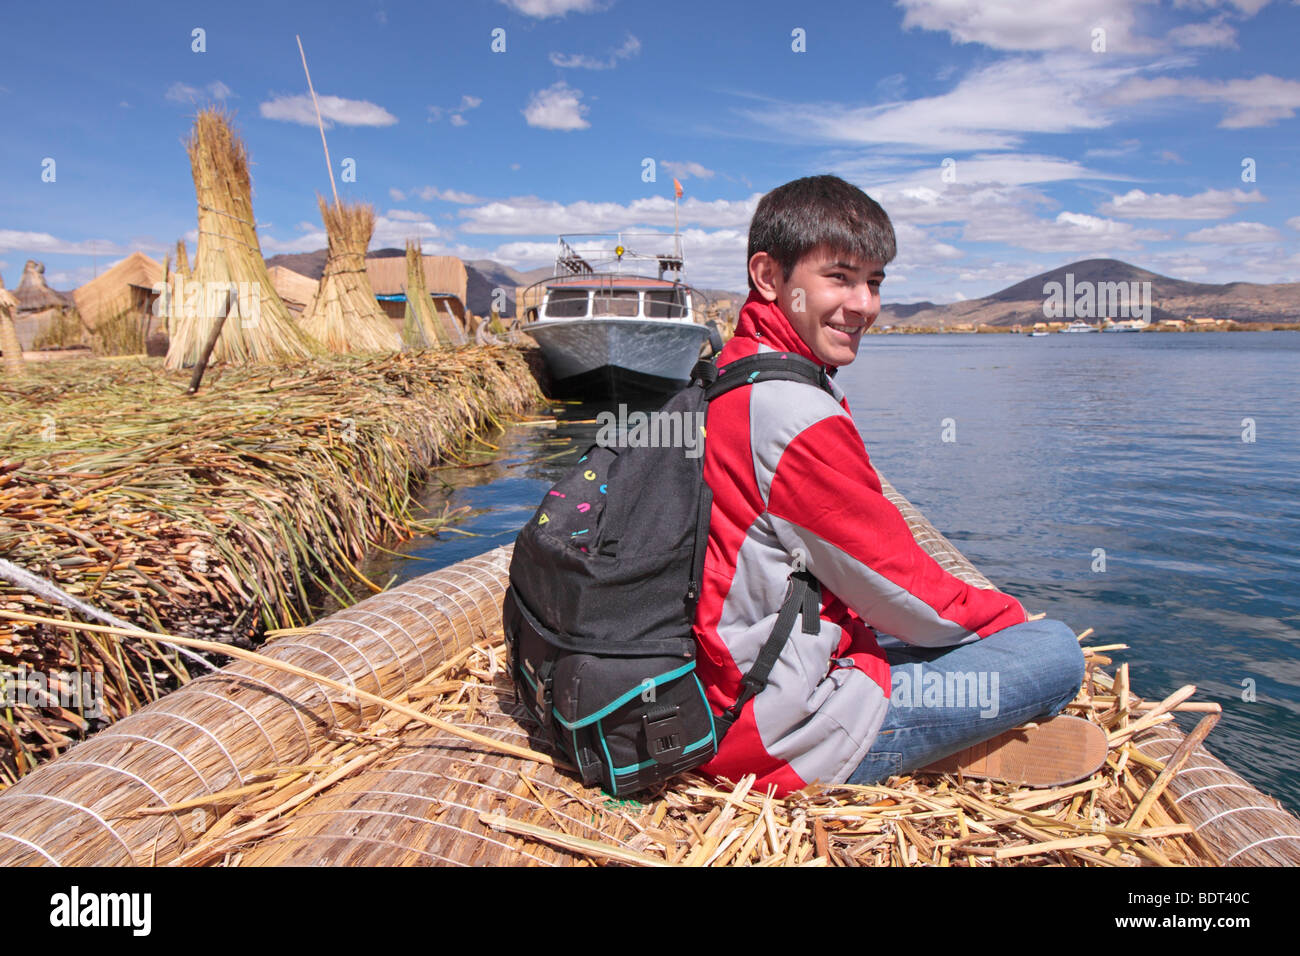 Teenage boy sur bateau fabriqué à partir de roseaux sur le lac Titicaca, Puno, Pérou Banque D'Images